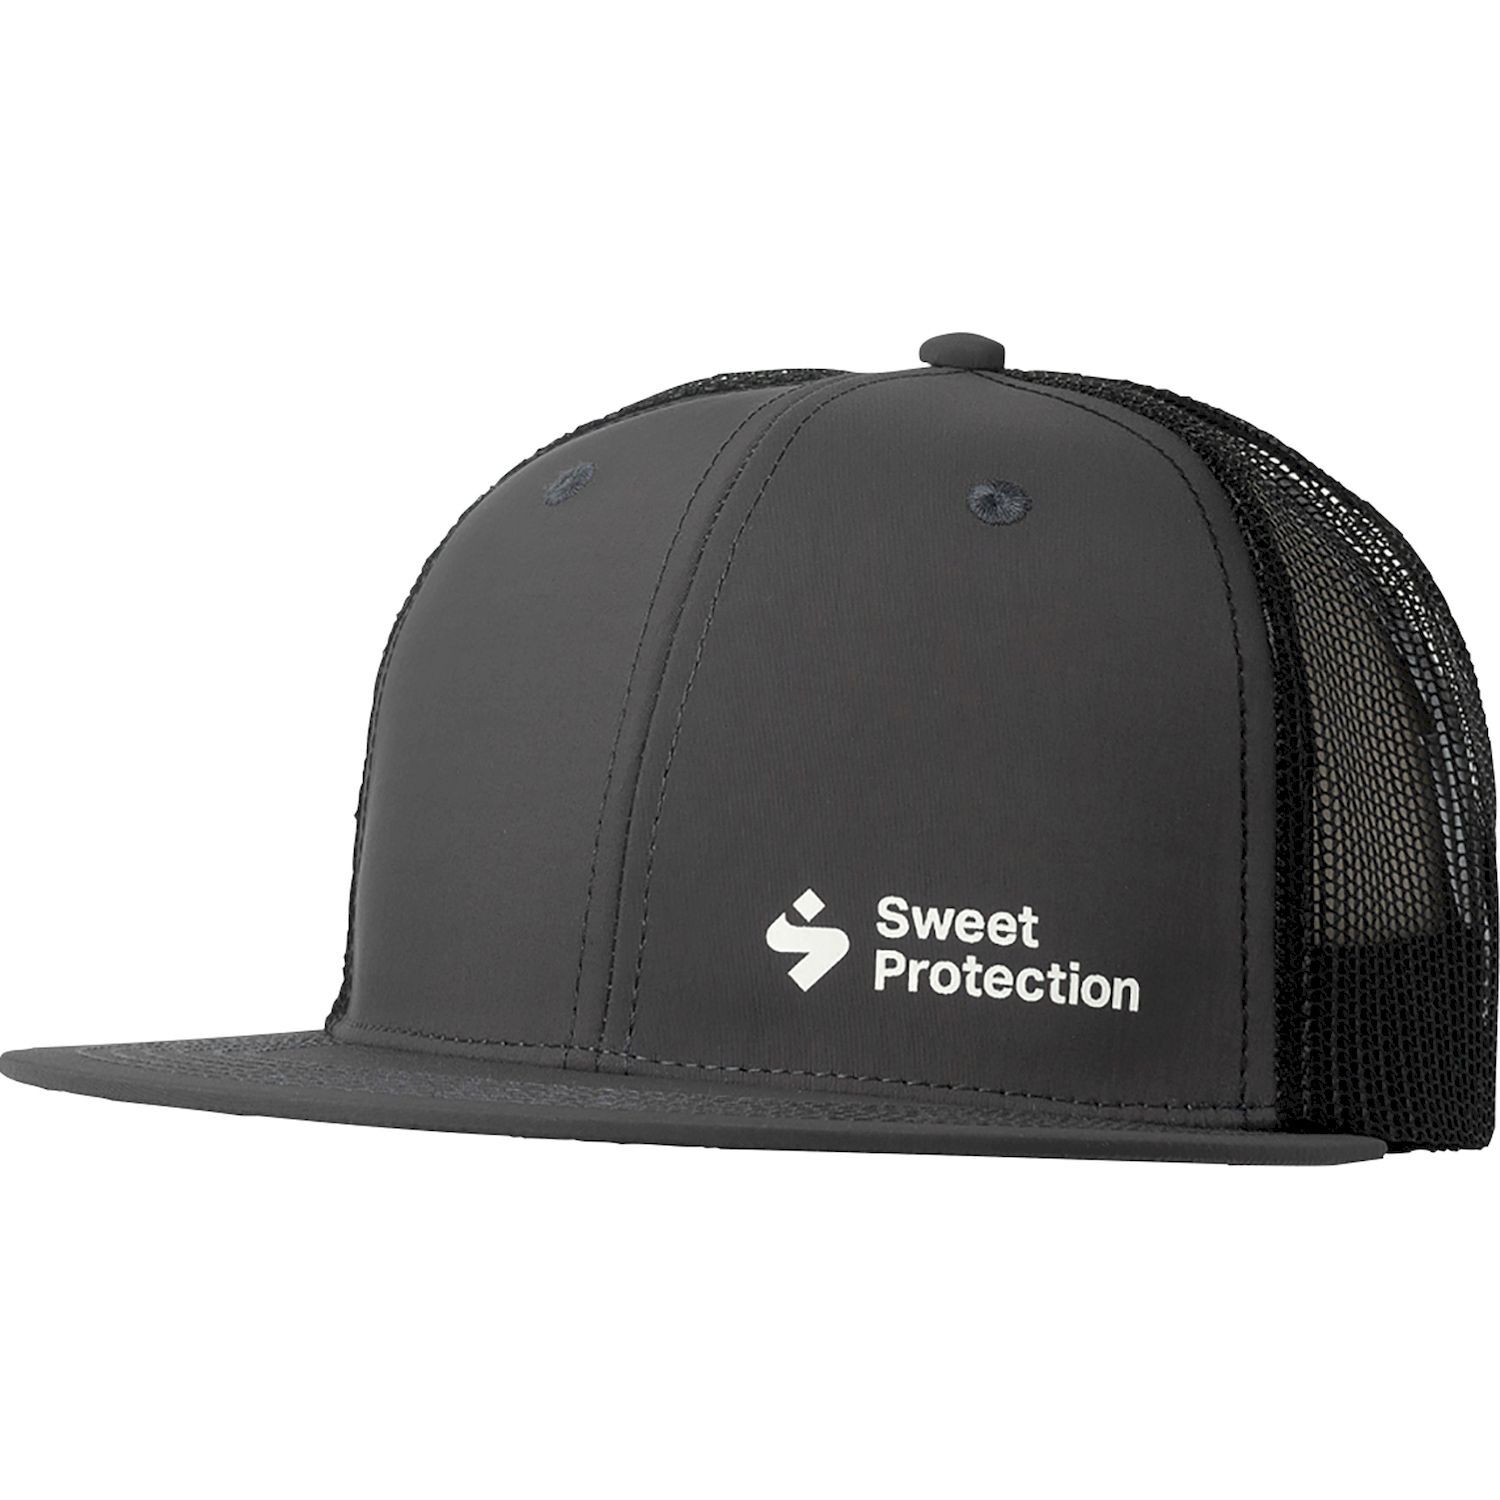 Sweet Protection Corporate Trucker Cap - Cap - Herrer